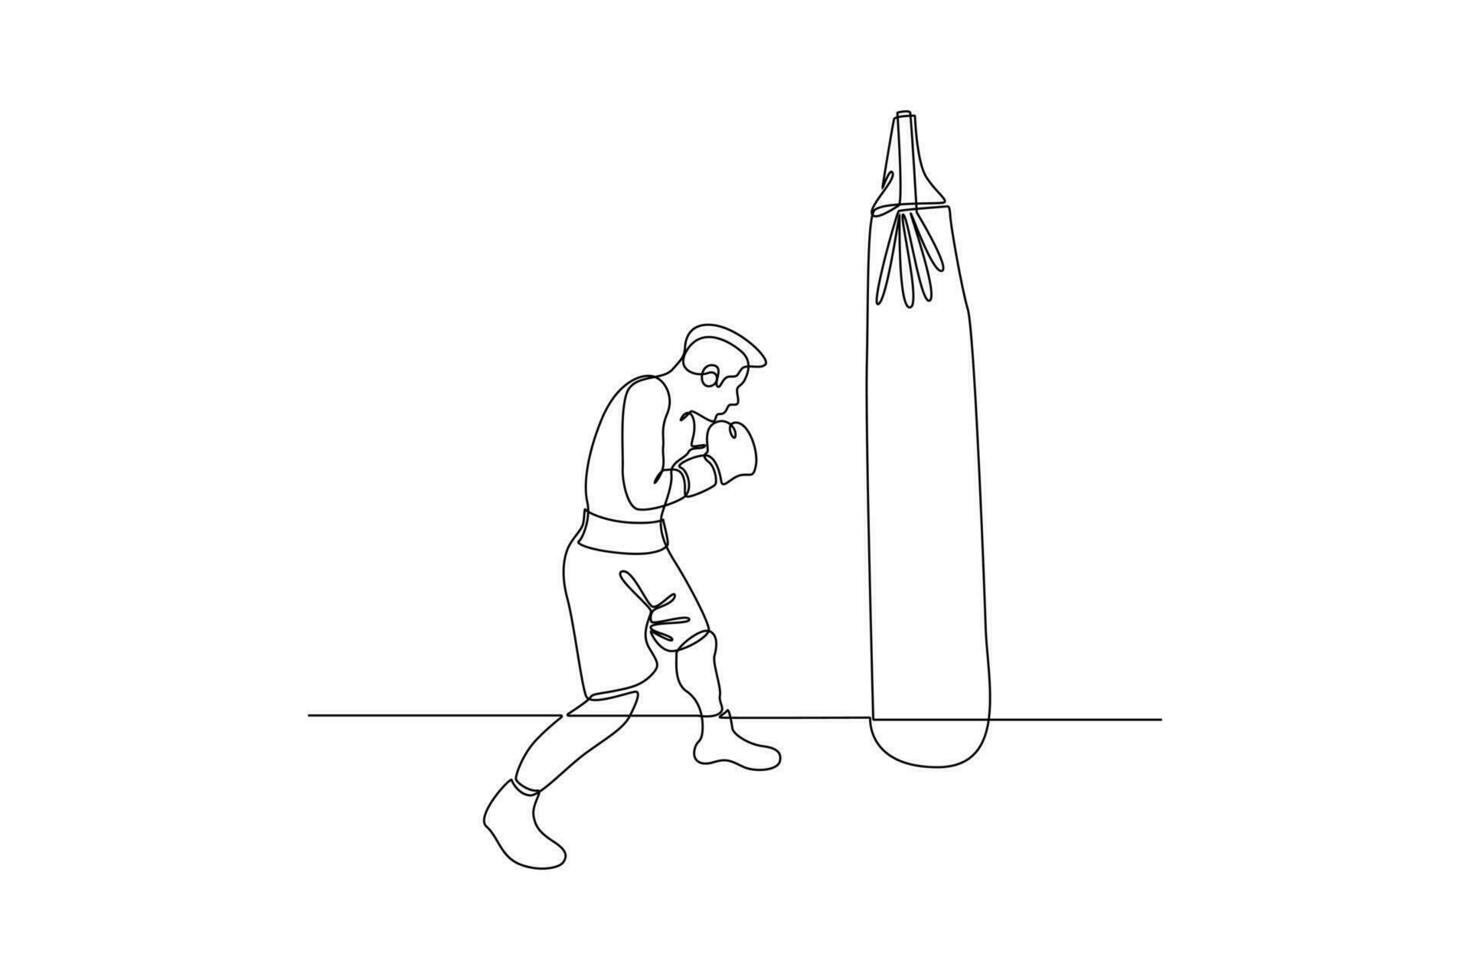 doorlopend een lijn tekening boksers, muai Thais strijders. boksen, sport, training concept. tekening vector illustratie.